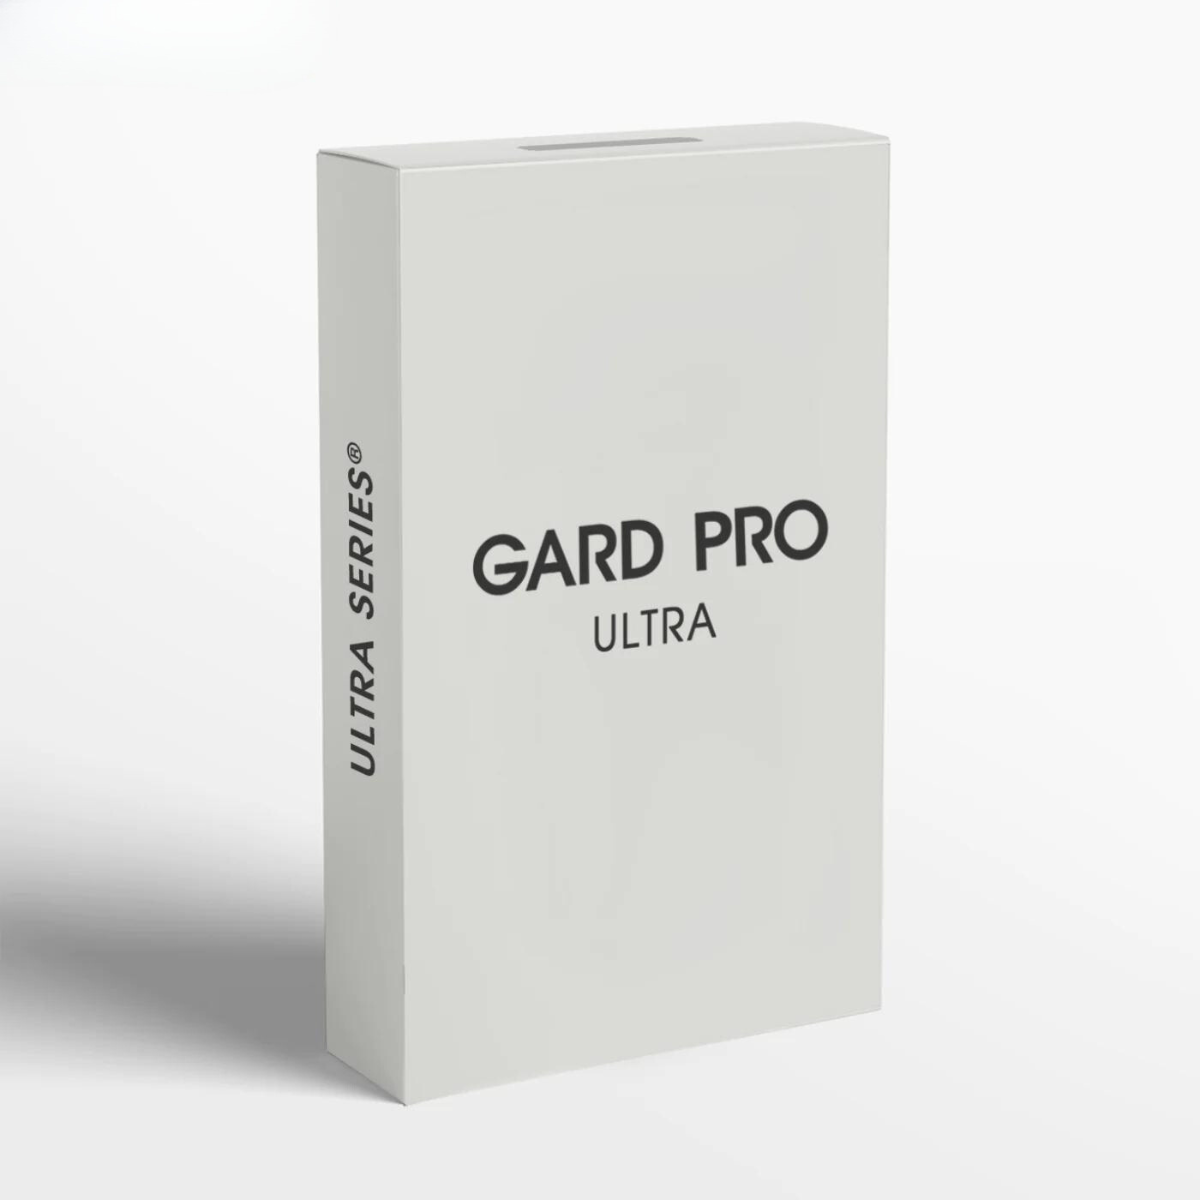 Gard Pro Ultra